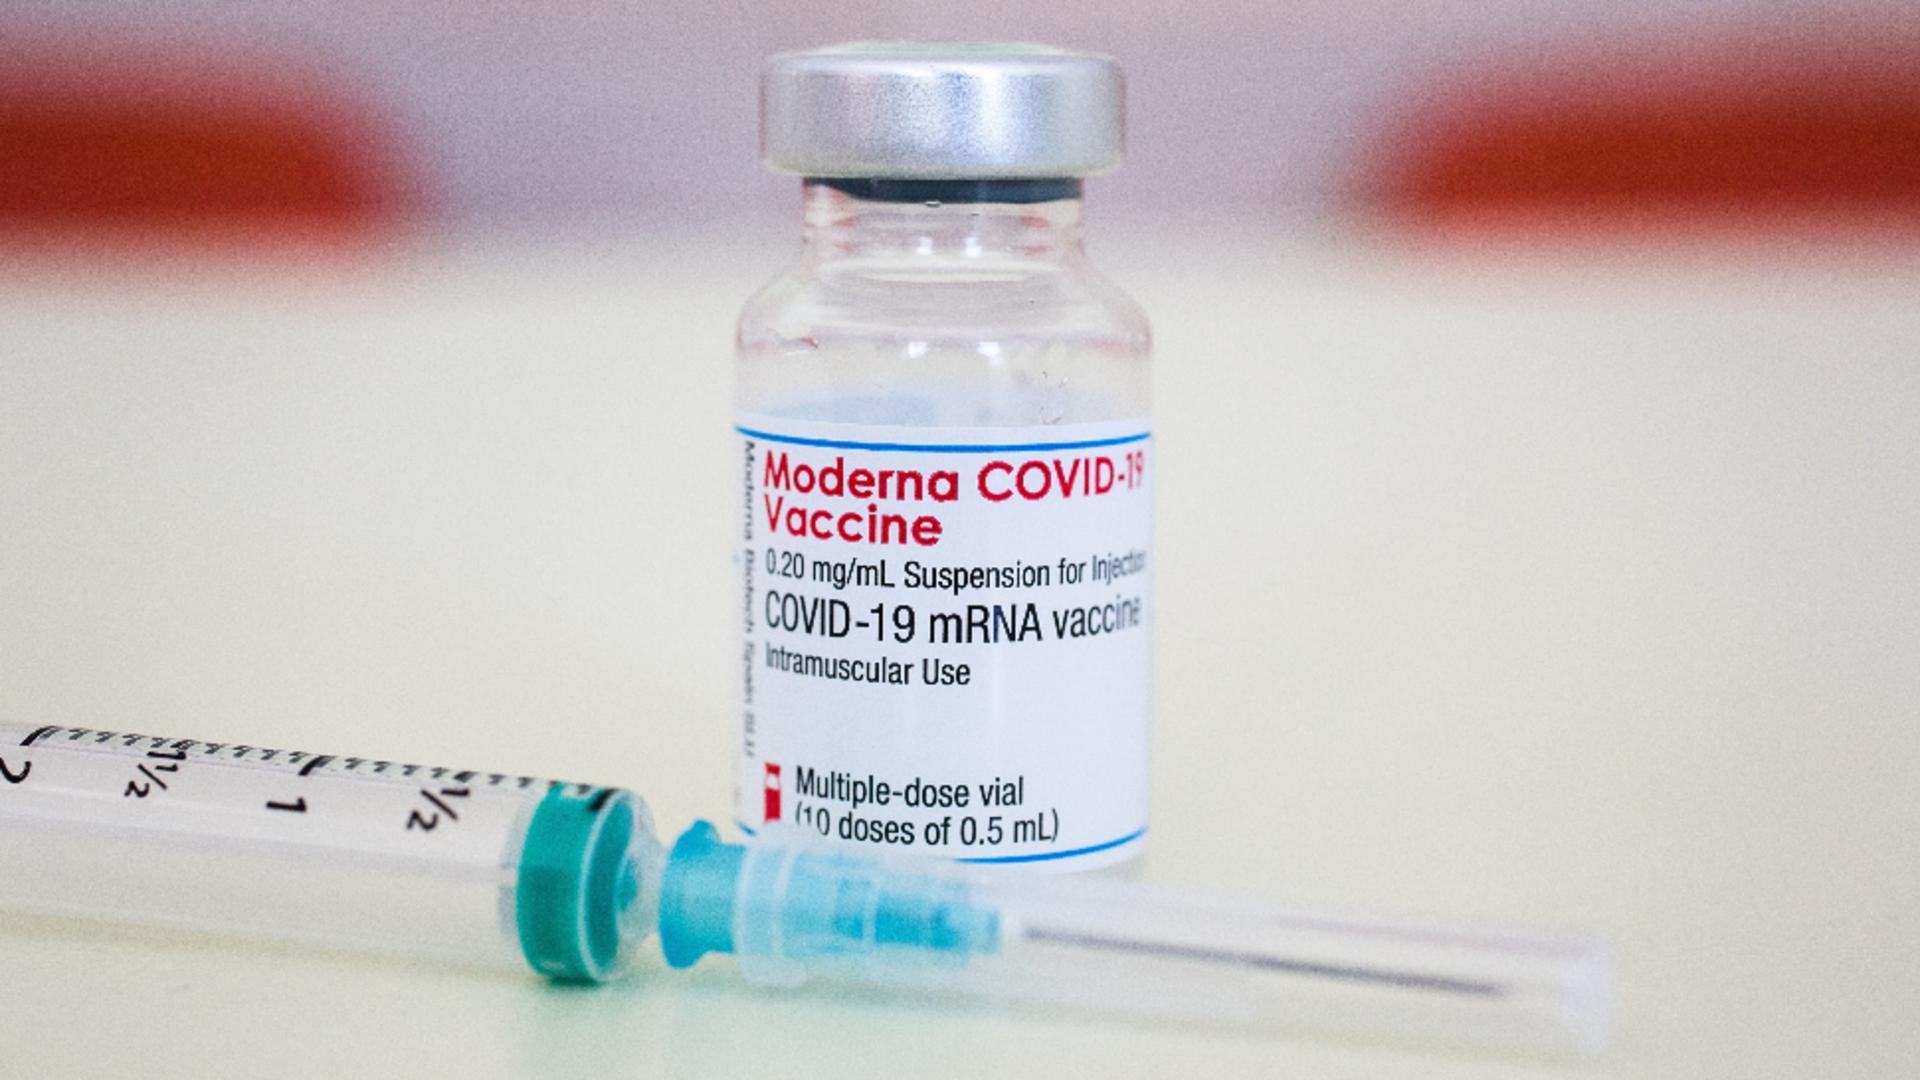 Au fost deschise cabinete noi pentru vaccinarea cu Moderna